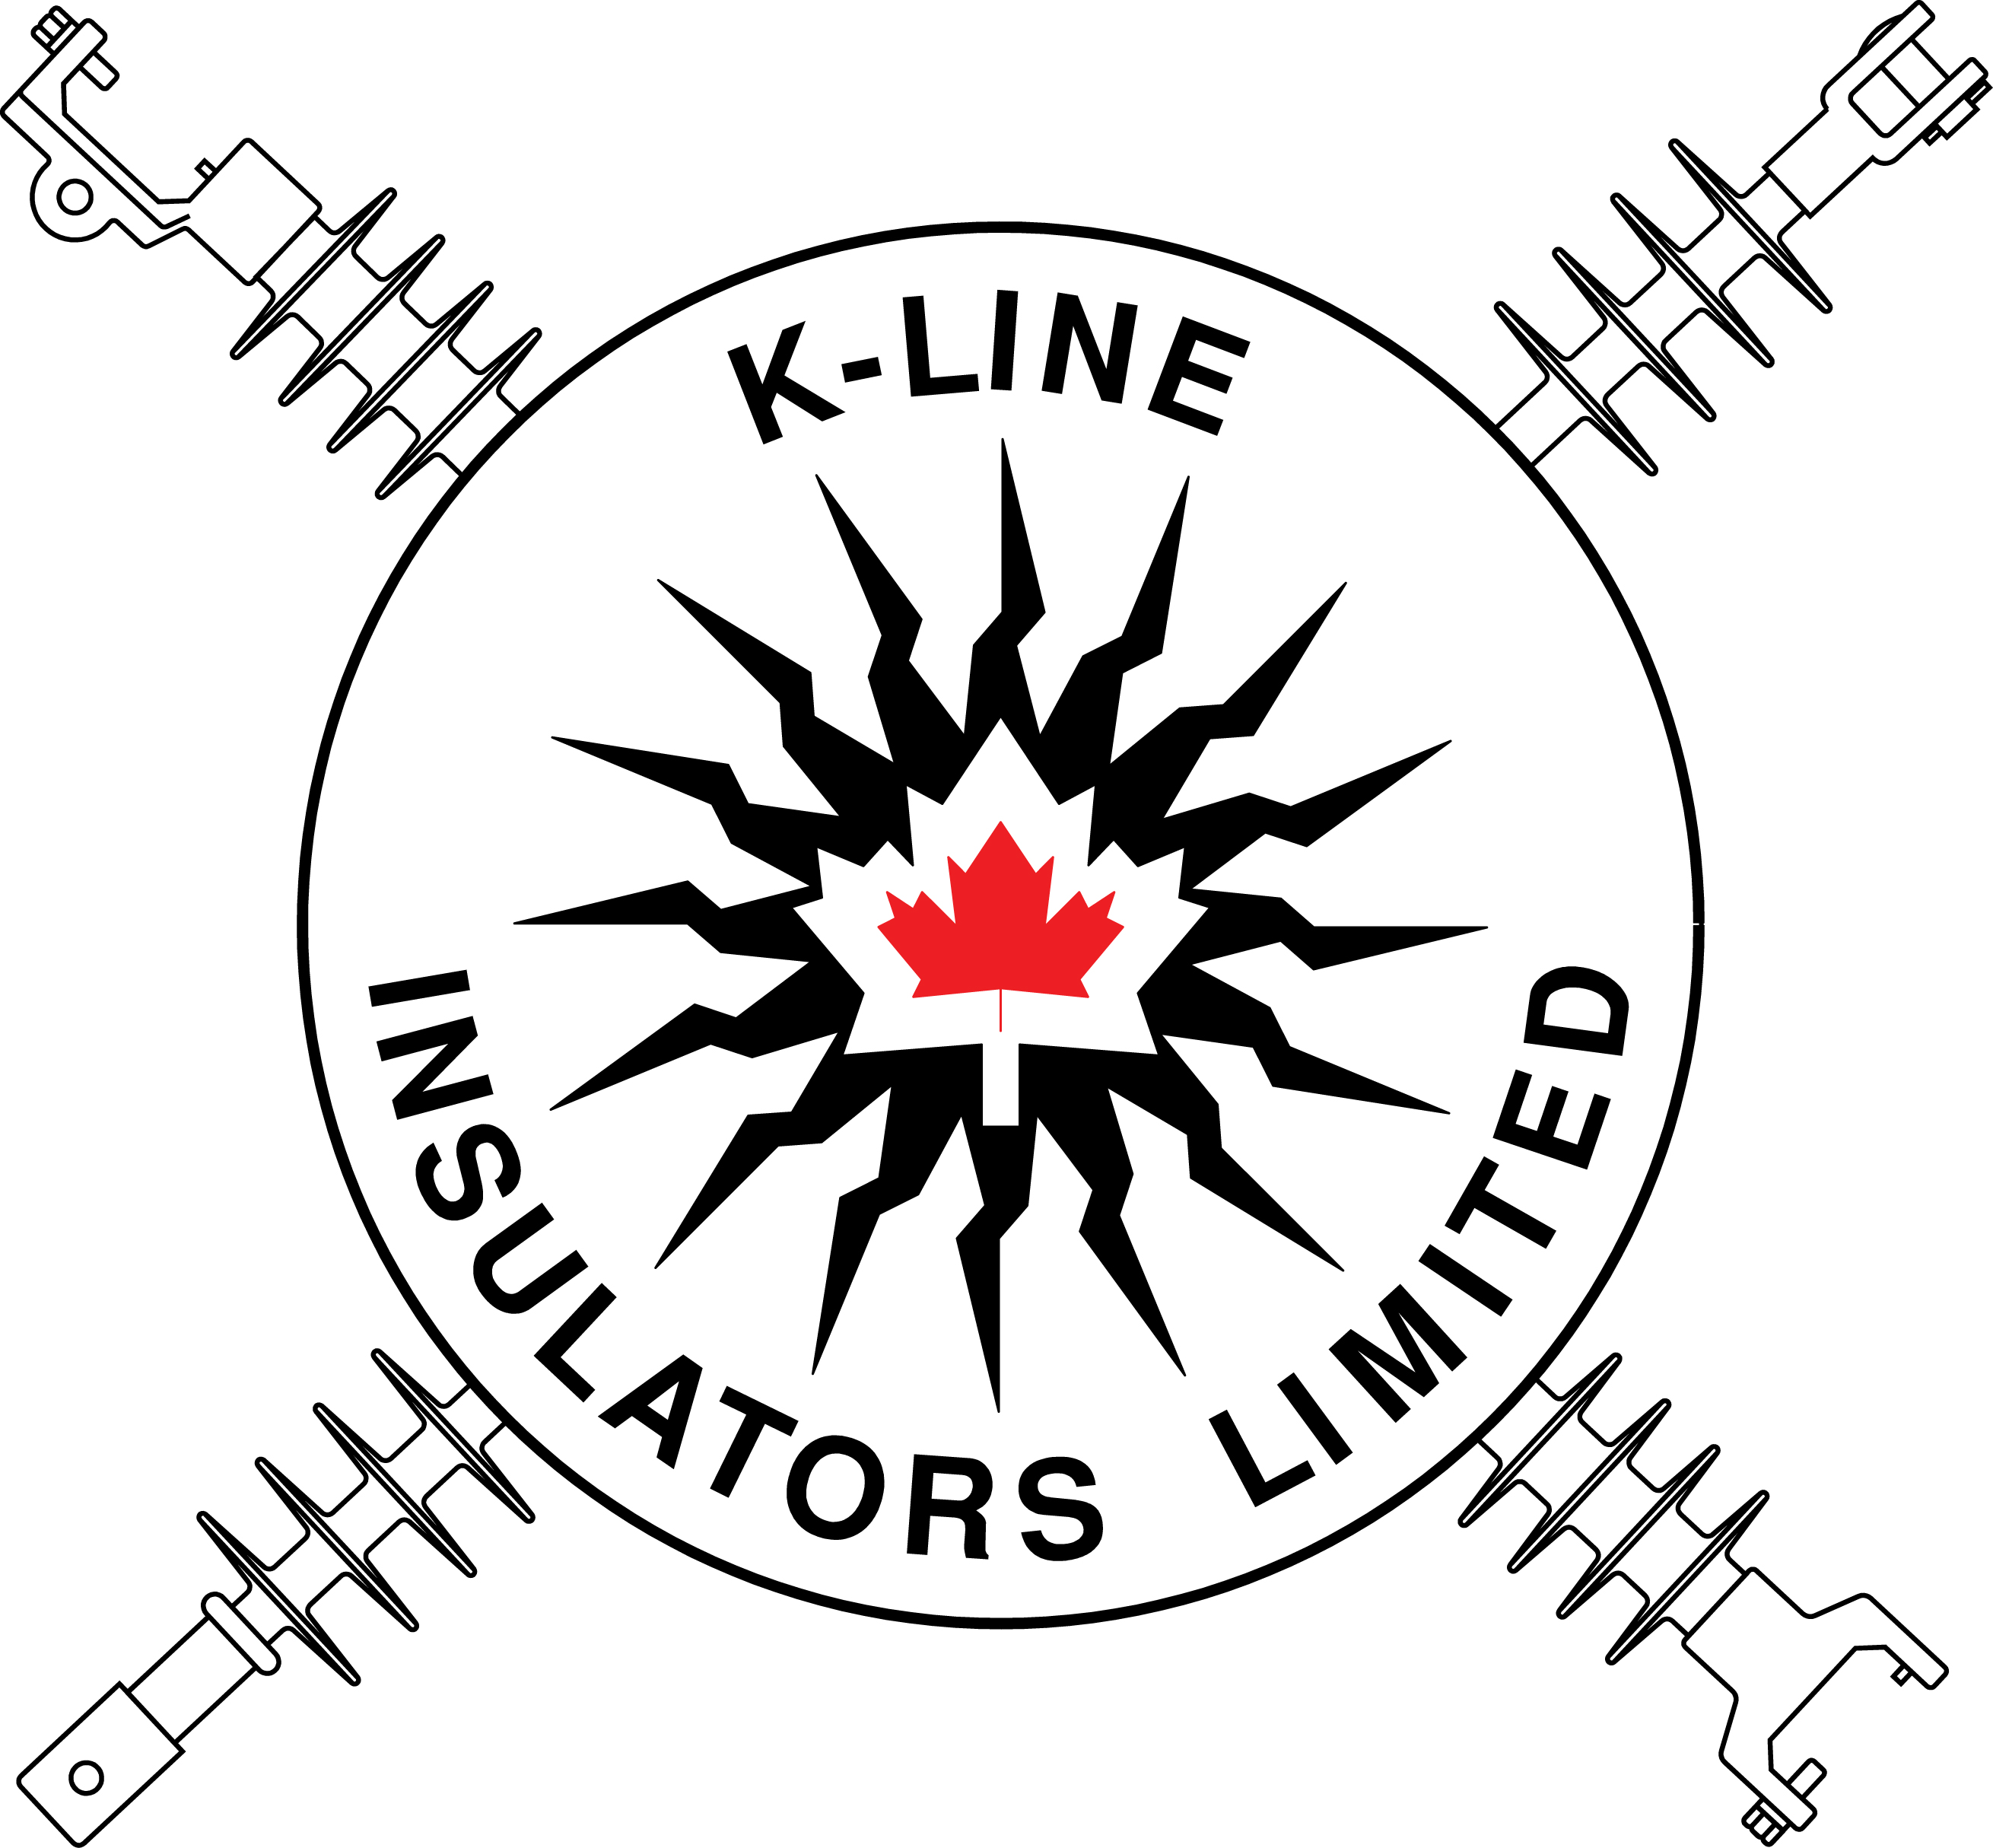 K-Line Insulators Ltd